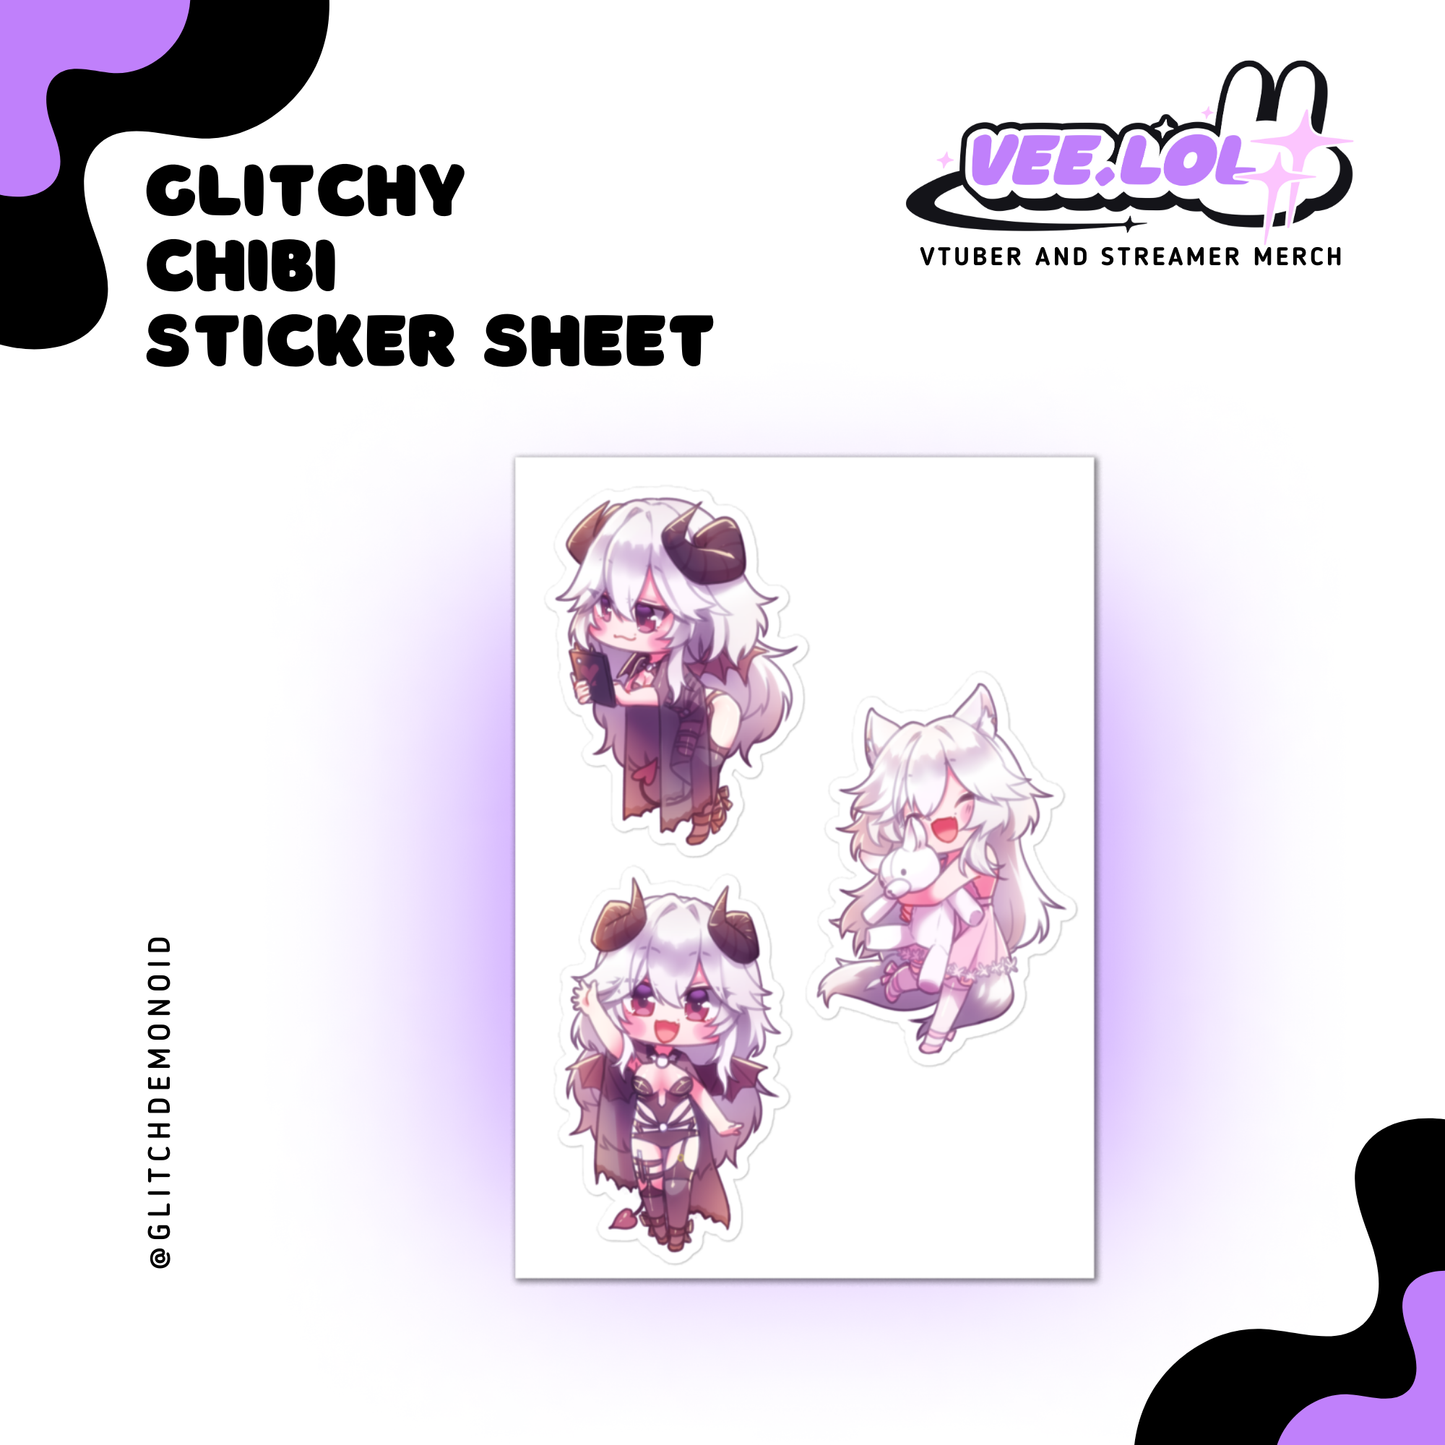 Glitchy Chibi Sticker Sheet